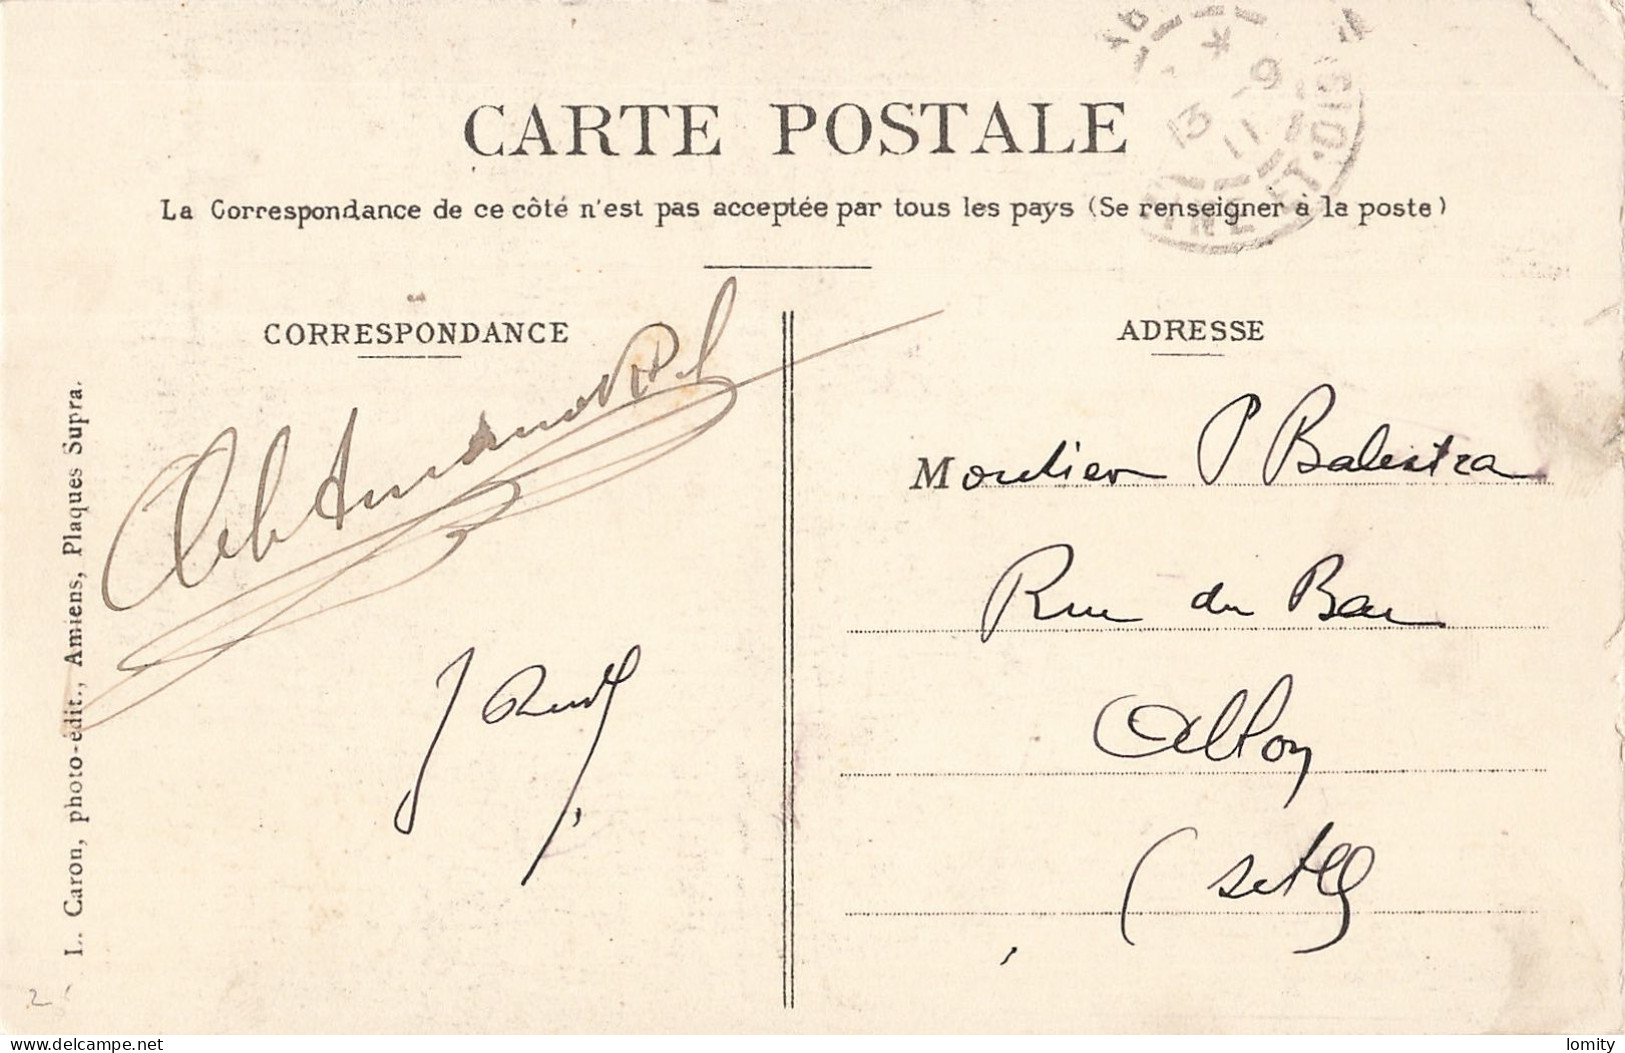 Destockage lot de 19 cartes postales CPA Somme Amiens Ham Albert Saint Valery sur Somme Ault Pierrepont sur Avre